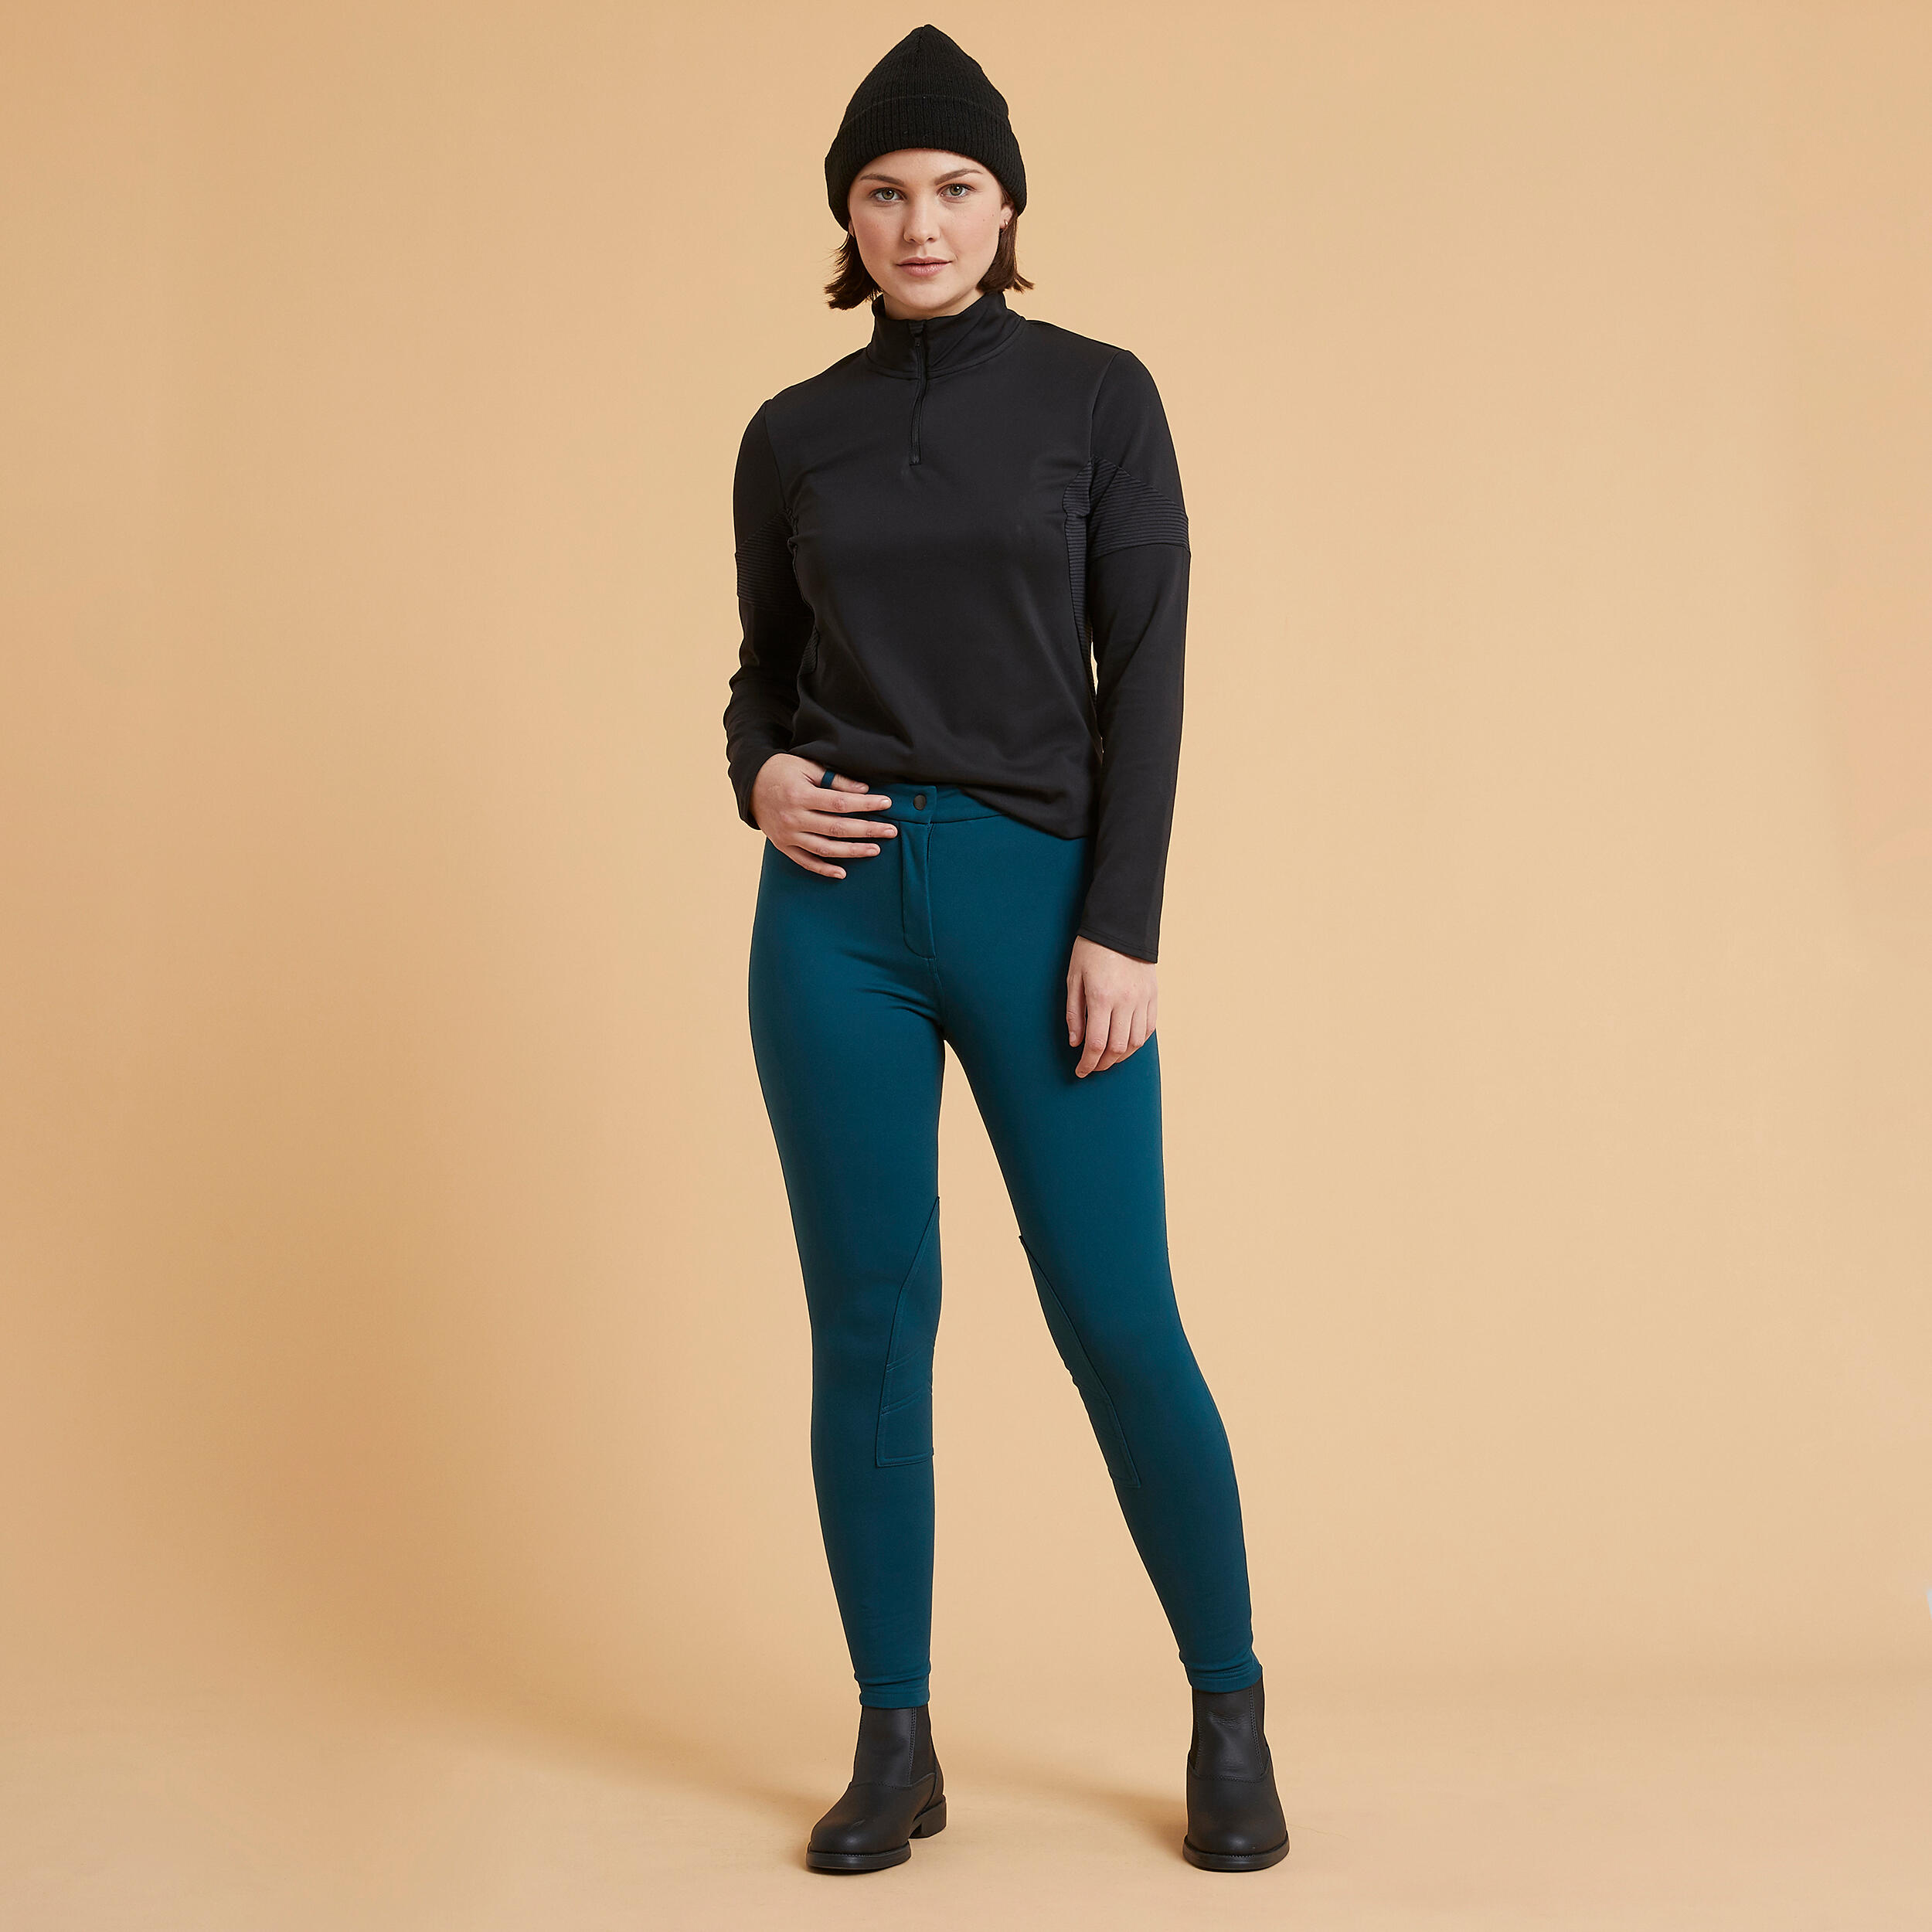 Pantalon équitation chaud femme - PT 100 bleu - FOUGANZA